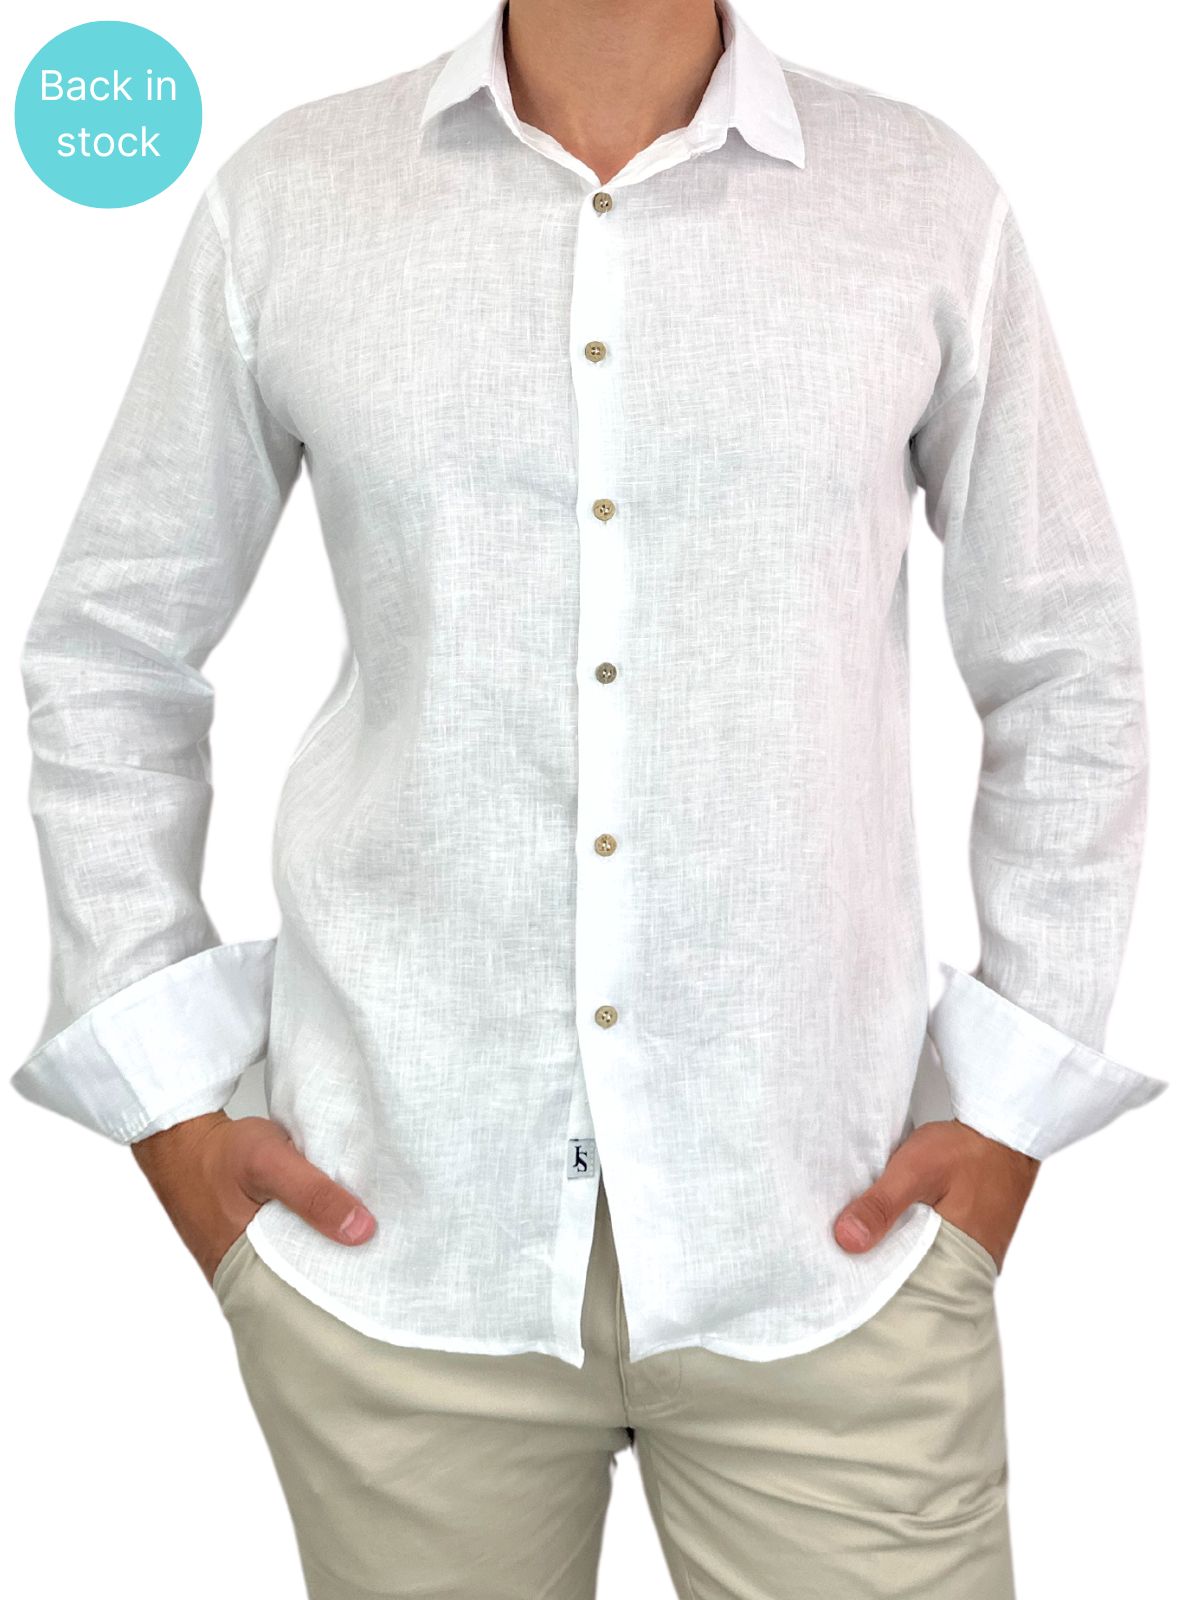 Byron Bay White Linen L/S Big Mens Shirt